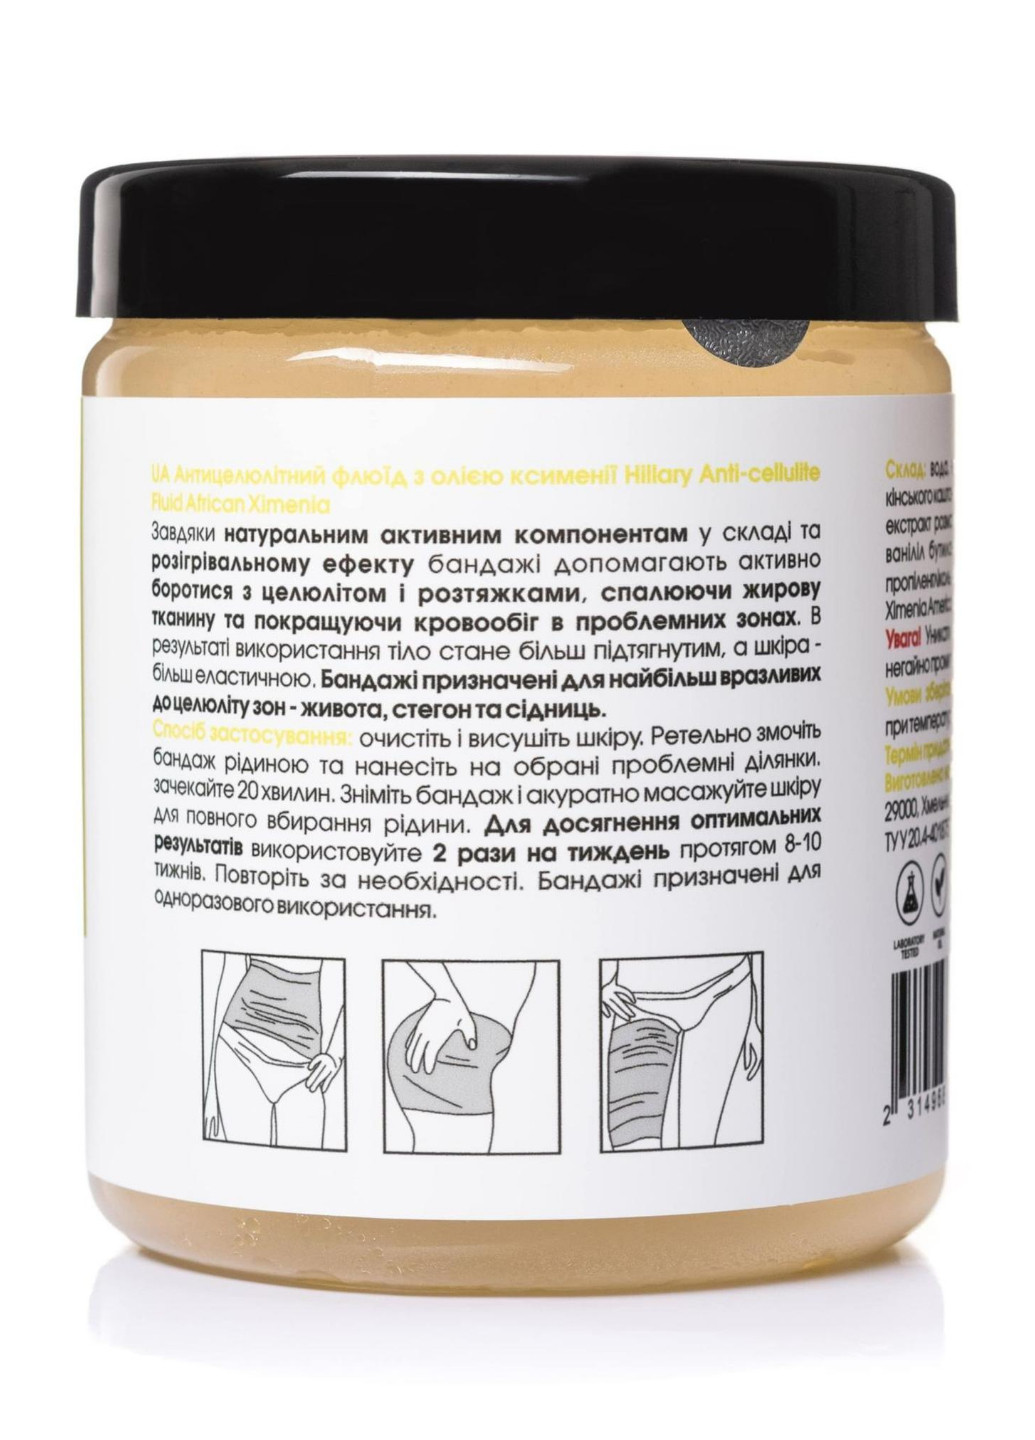 Набір Антицелюлітні обгортання + рідина з олією ксименії Anti-cellulite African Ximenia (12 процедур) Hillary (256733657)